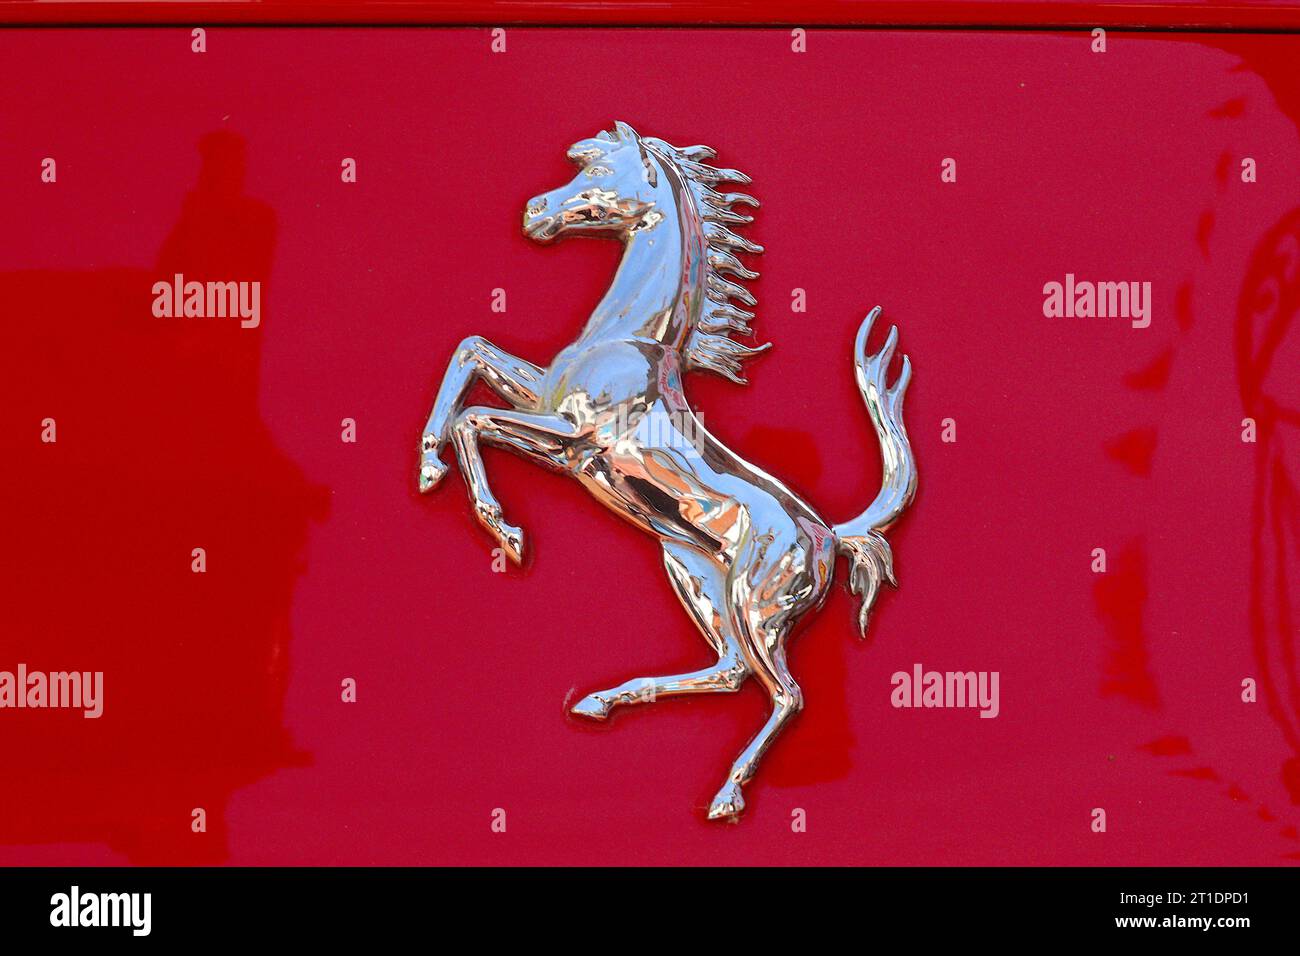 Dettaglio ravvicinato dell'iconico emblema del Cavallino rampante cromato Ferrari che adorna la carrozzeria di una delle loro sportive scarlatte. Foto Stock